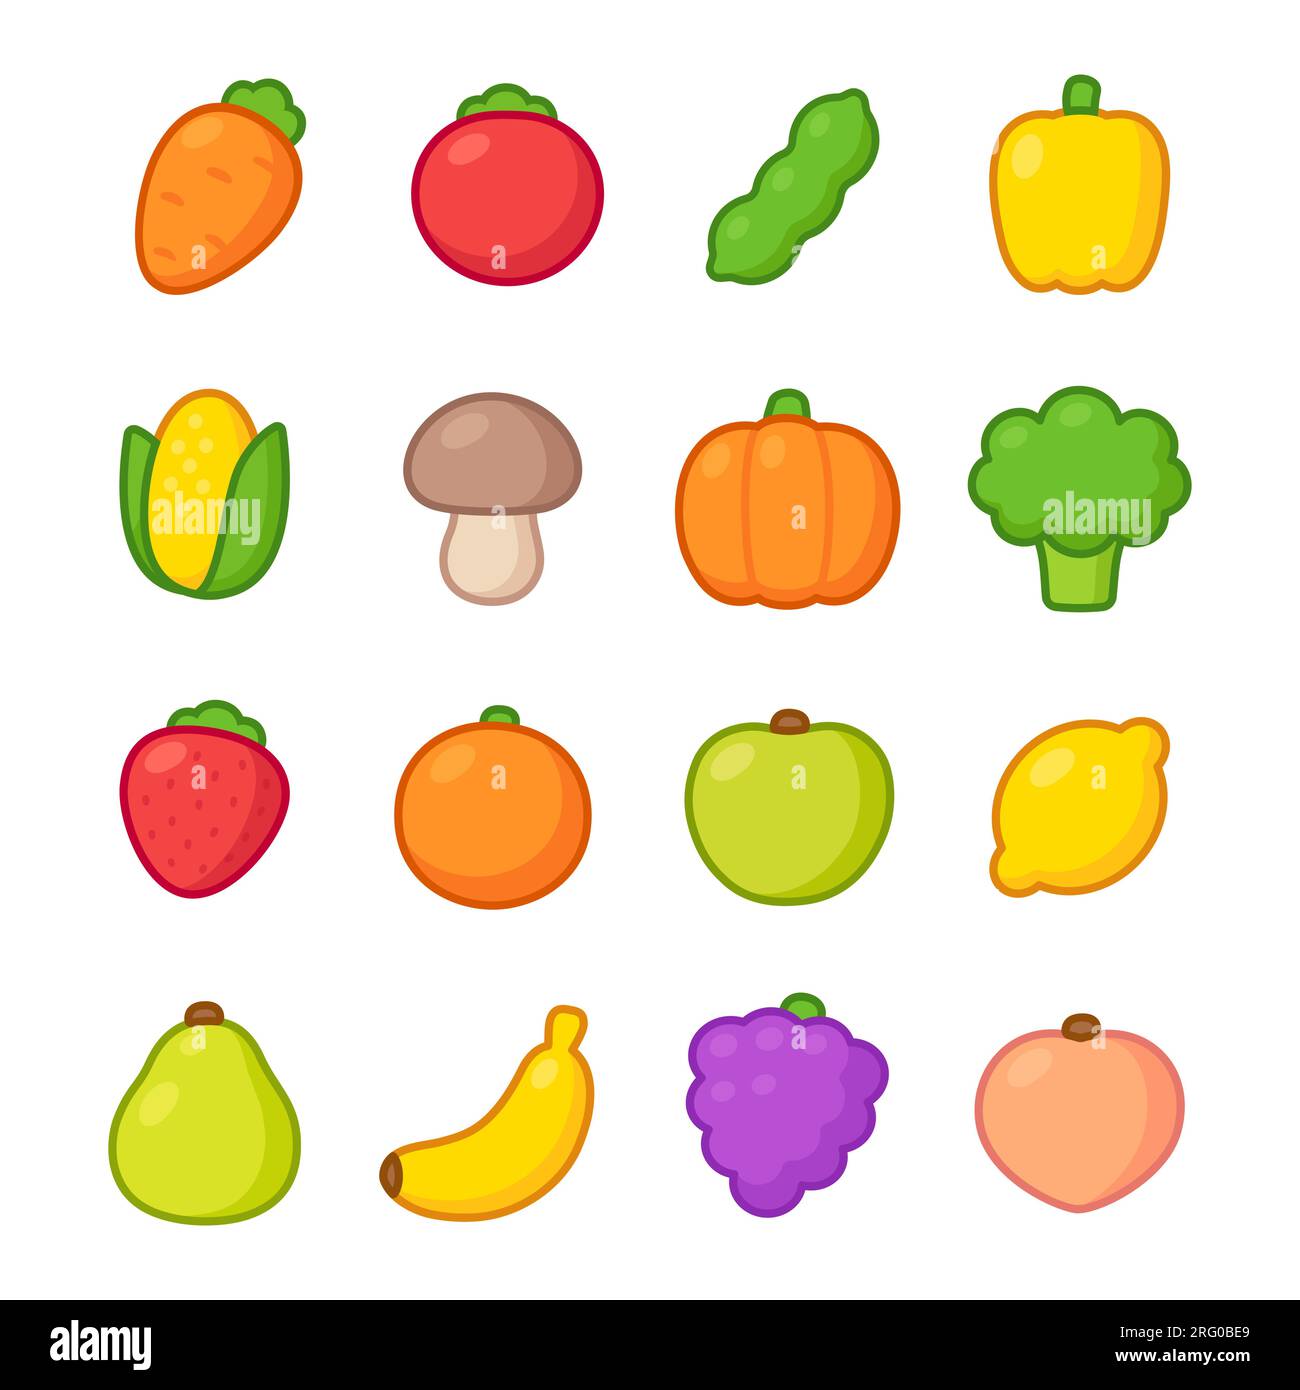 Icone di frutta e verdura disegnate a mano. Disegni colorati semplici e simpatici, set di illustrazioni vettoriali. Caramelle al marzapane. Illustrazione Vettoriale